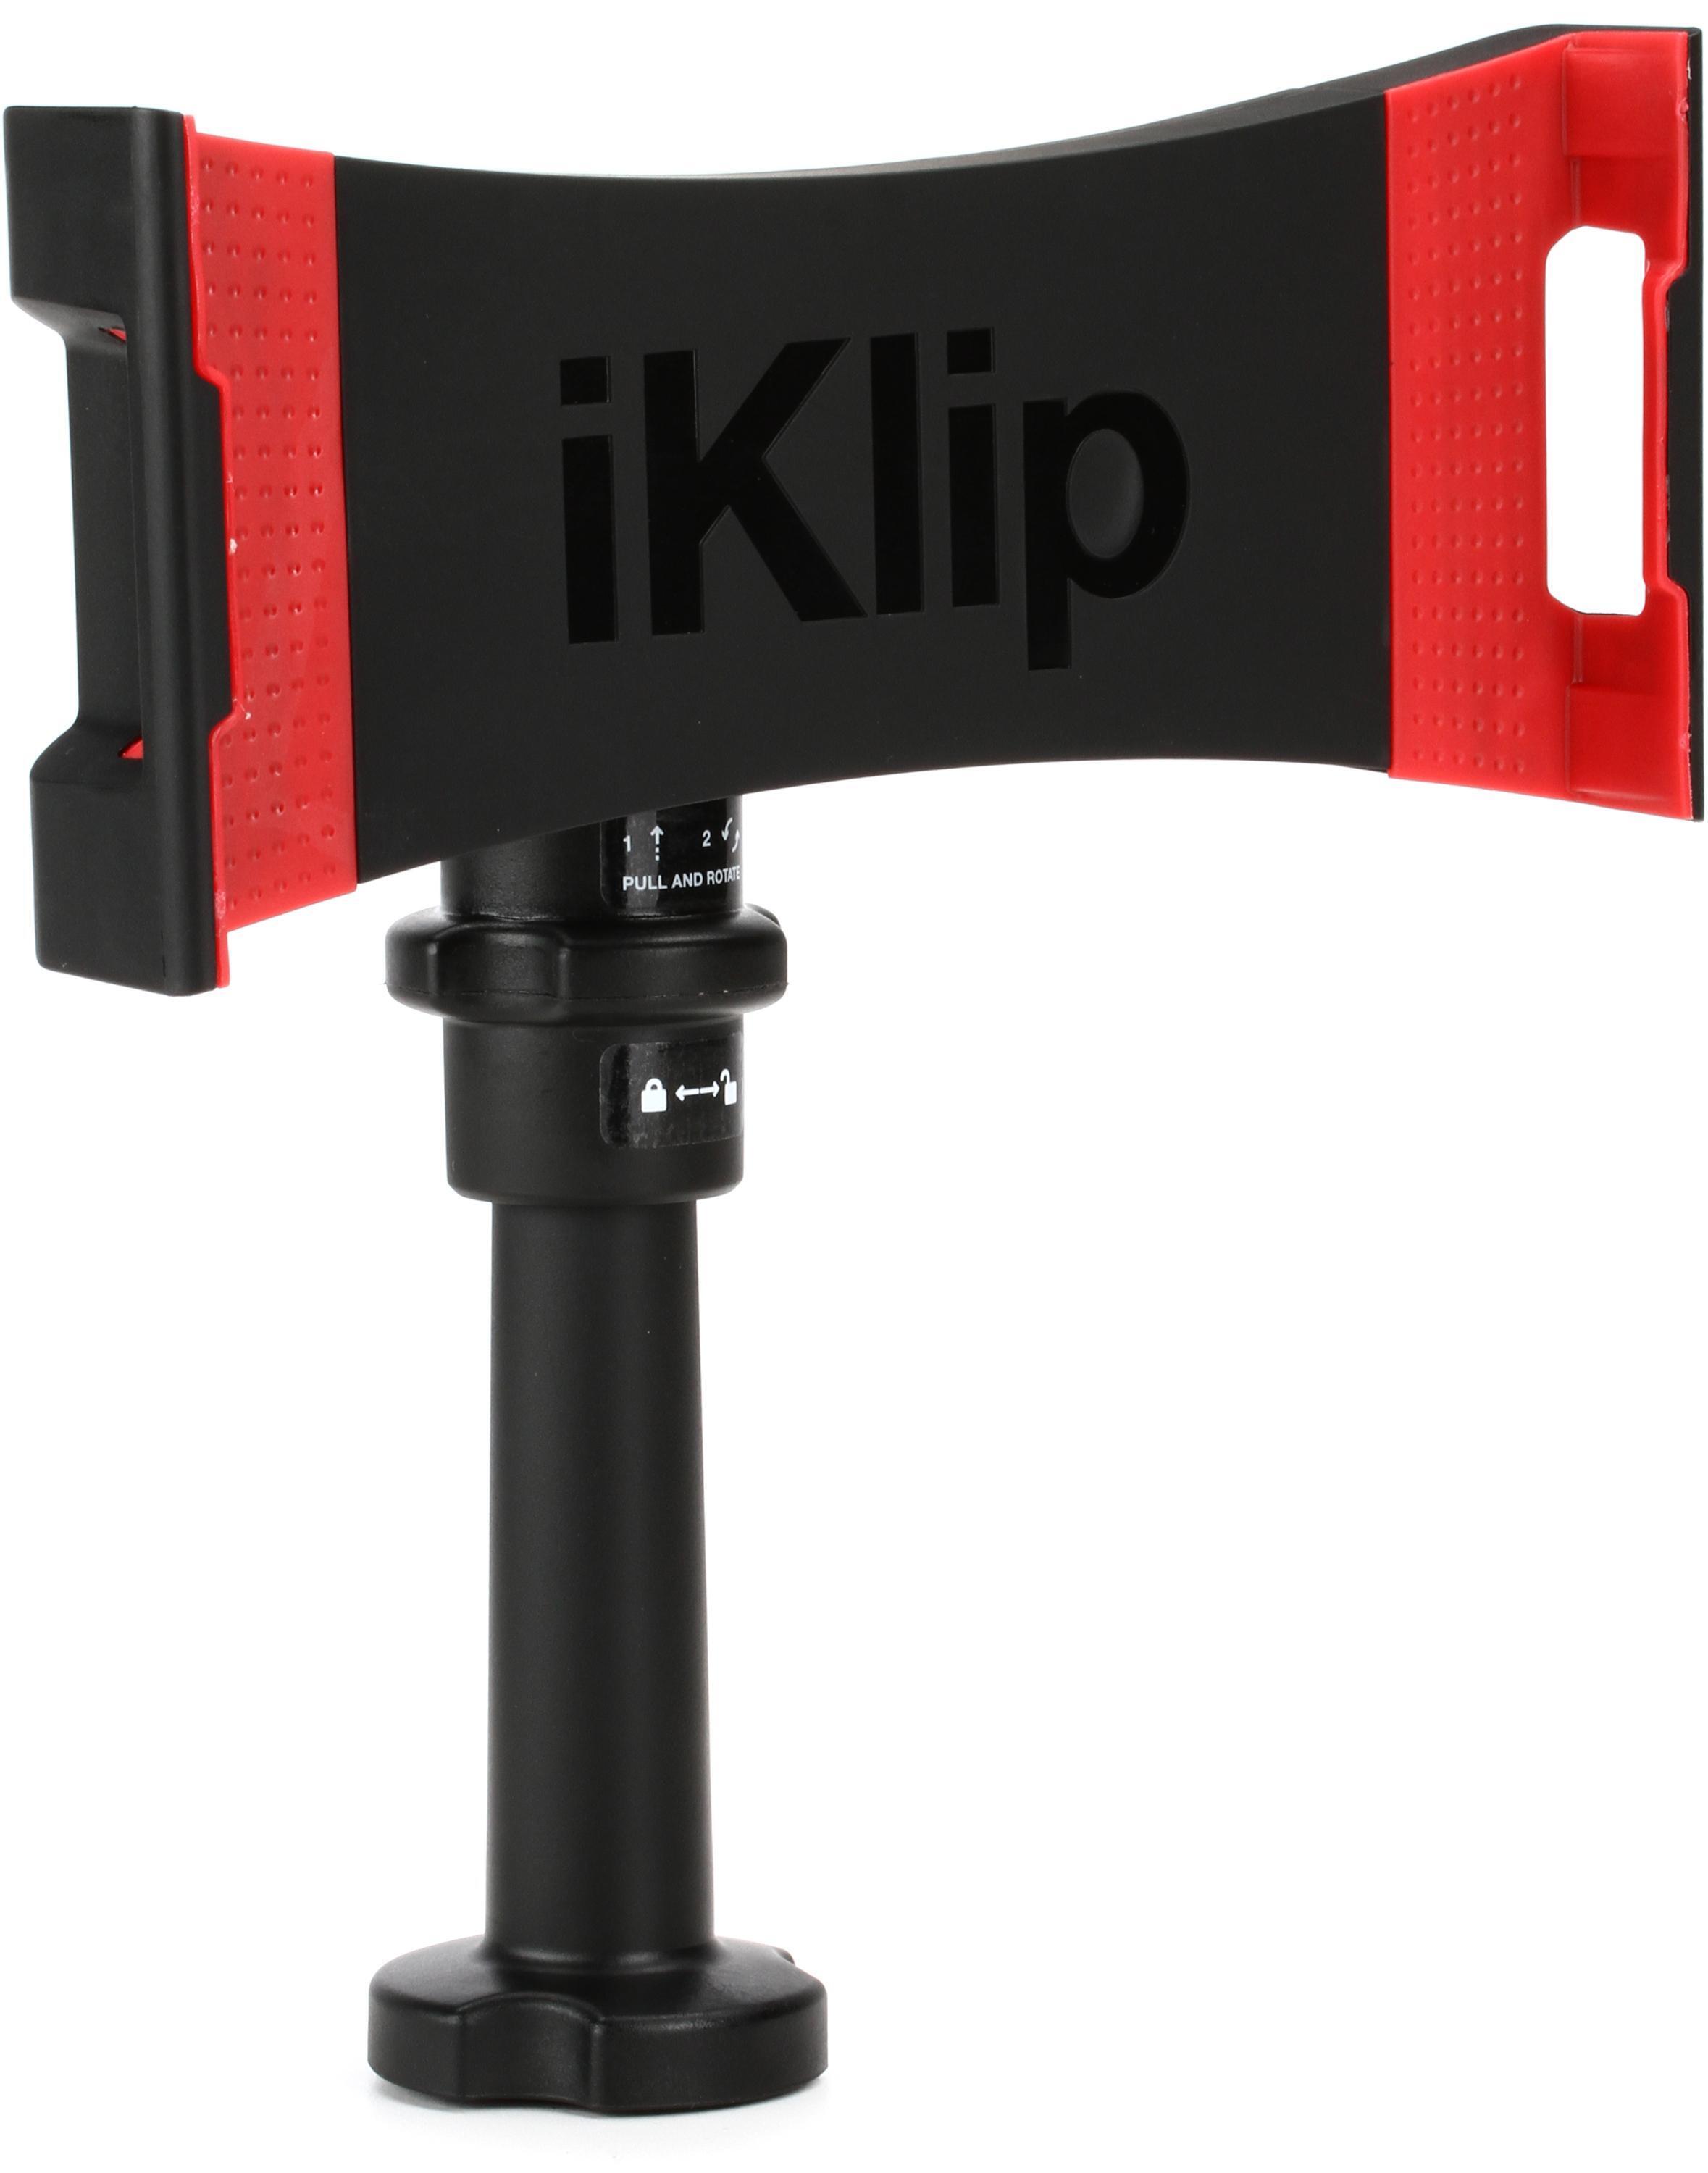 IK Multimedia iKlip 3 Deluxe - Accessoires Home Studio - Garantie